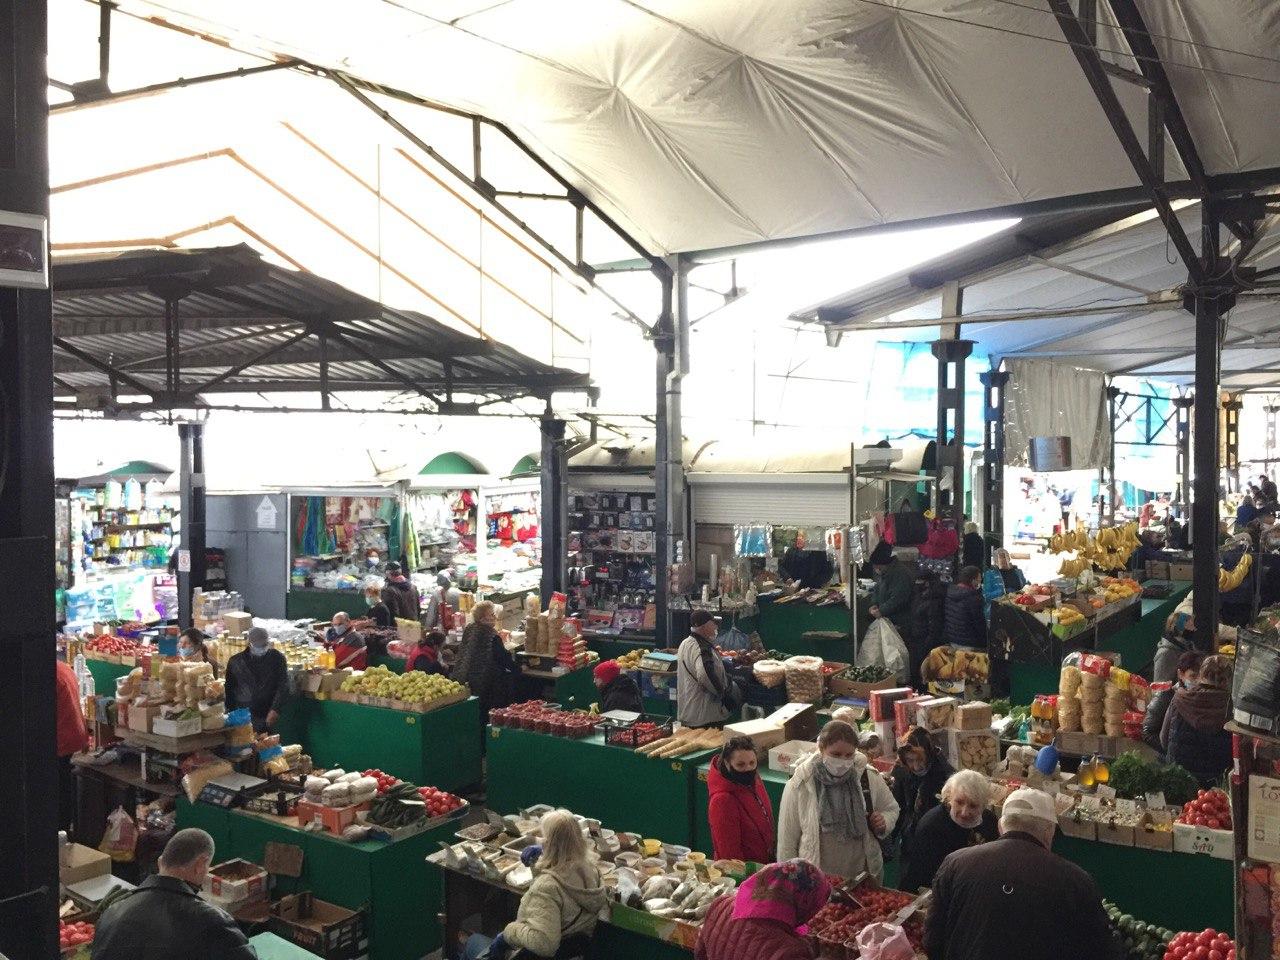 piața centrală Bălți